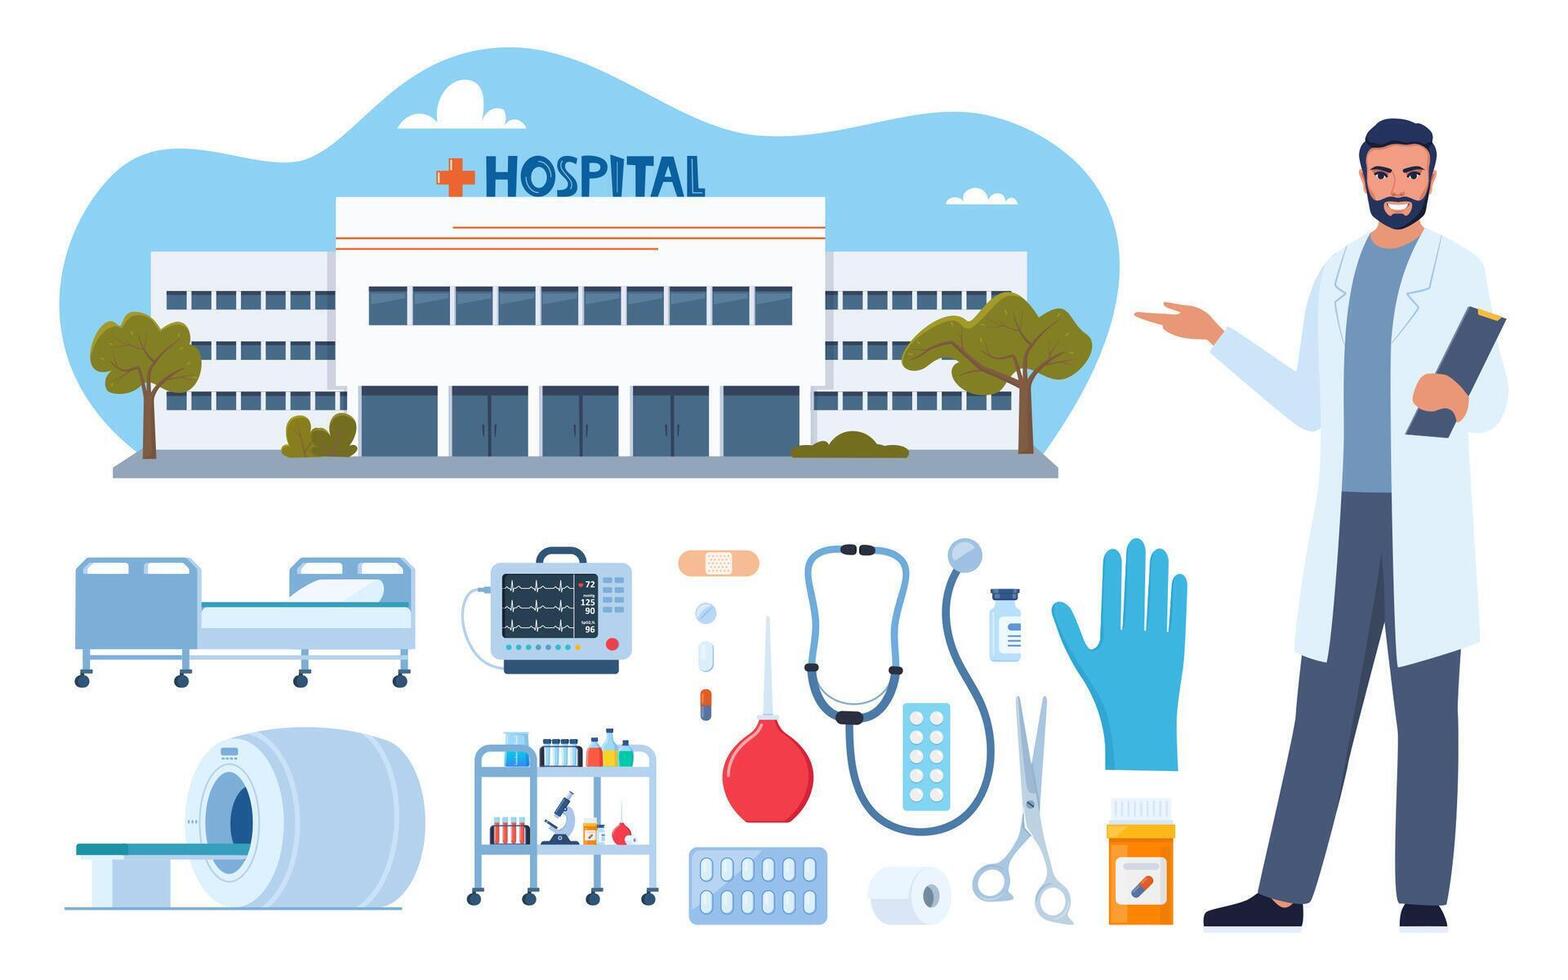 sjukhus byggnad, medicinsk enheter och läkare karaktär. sjukhus möbel, verktyg, läkemedel, Utrustning för behandling och diagnos. sjukvård ikoner uppsättning. vektor illustration.